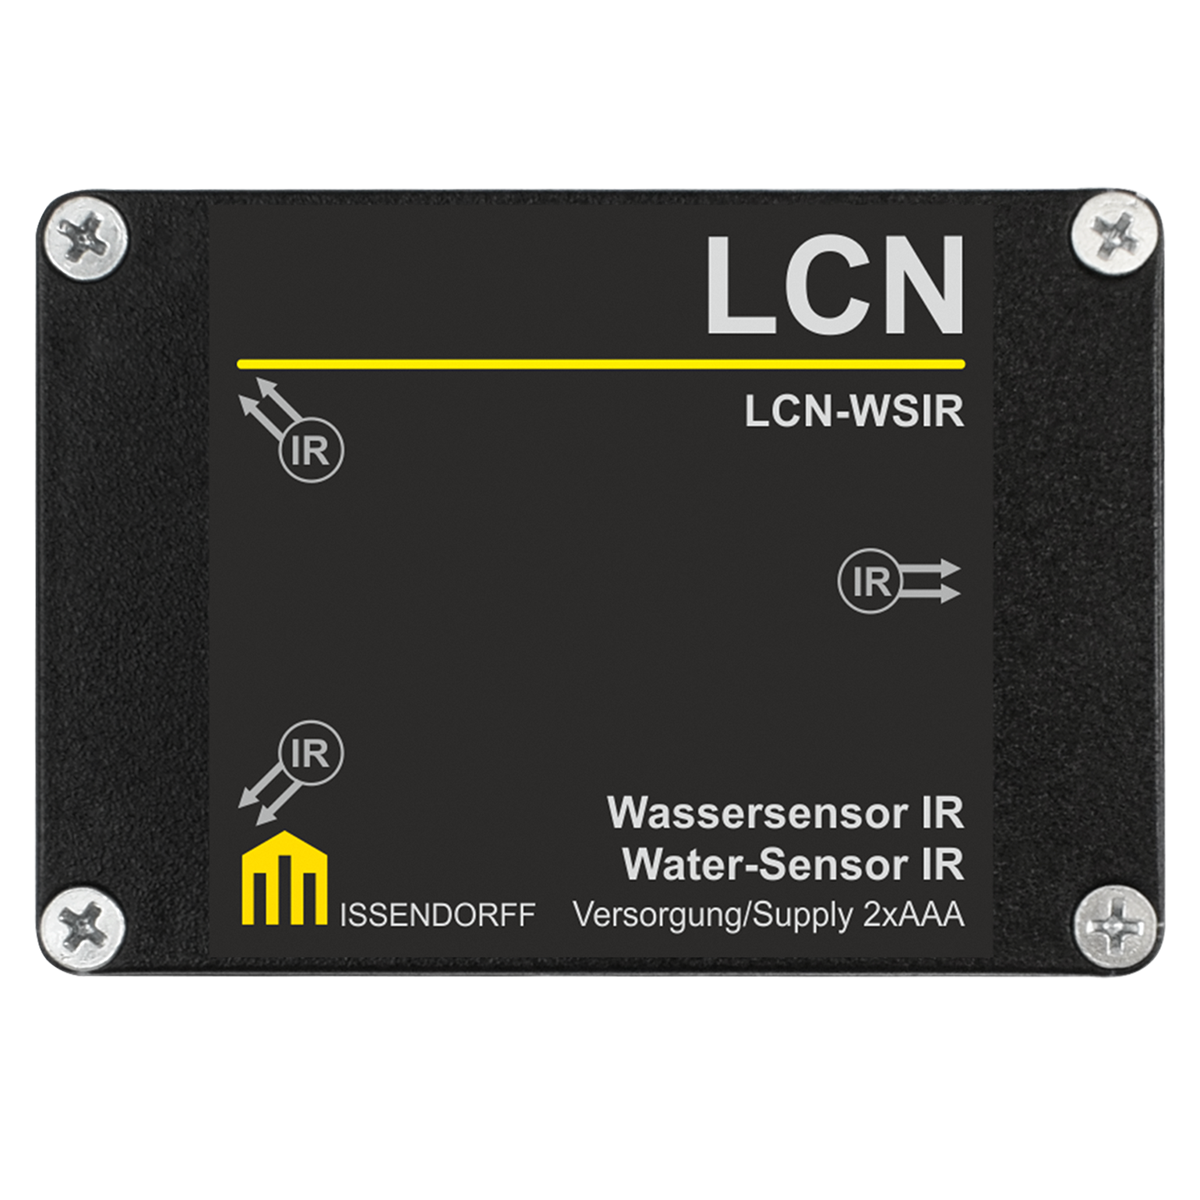 LCN-WSIR